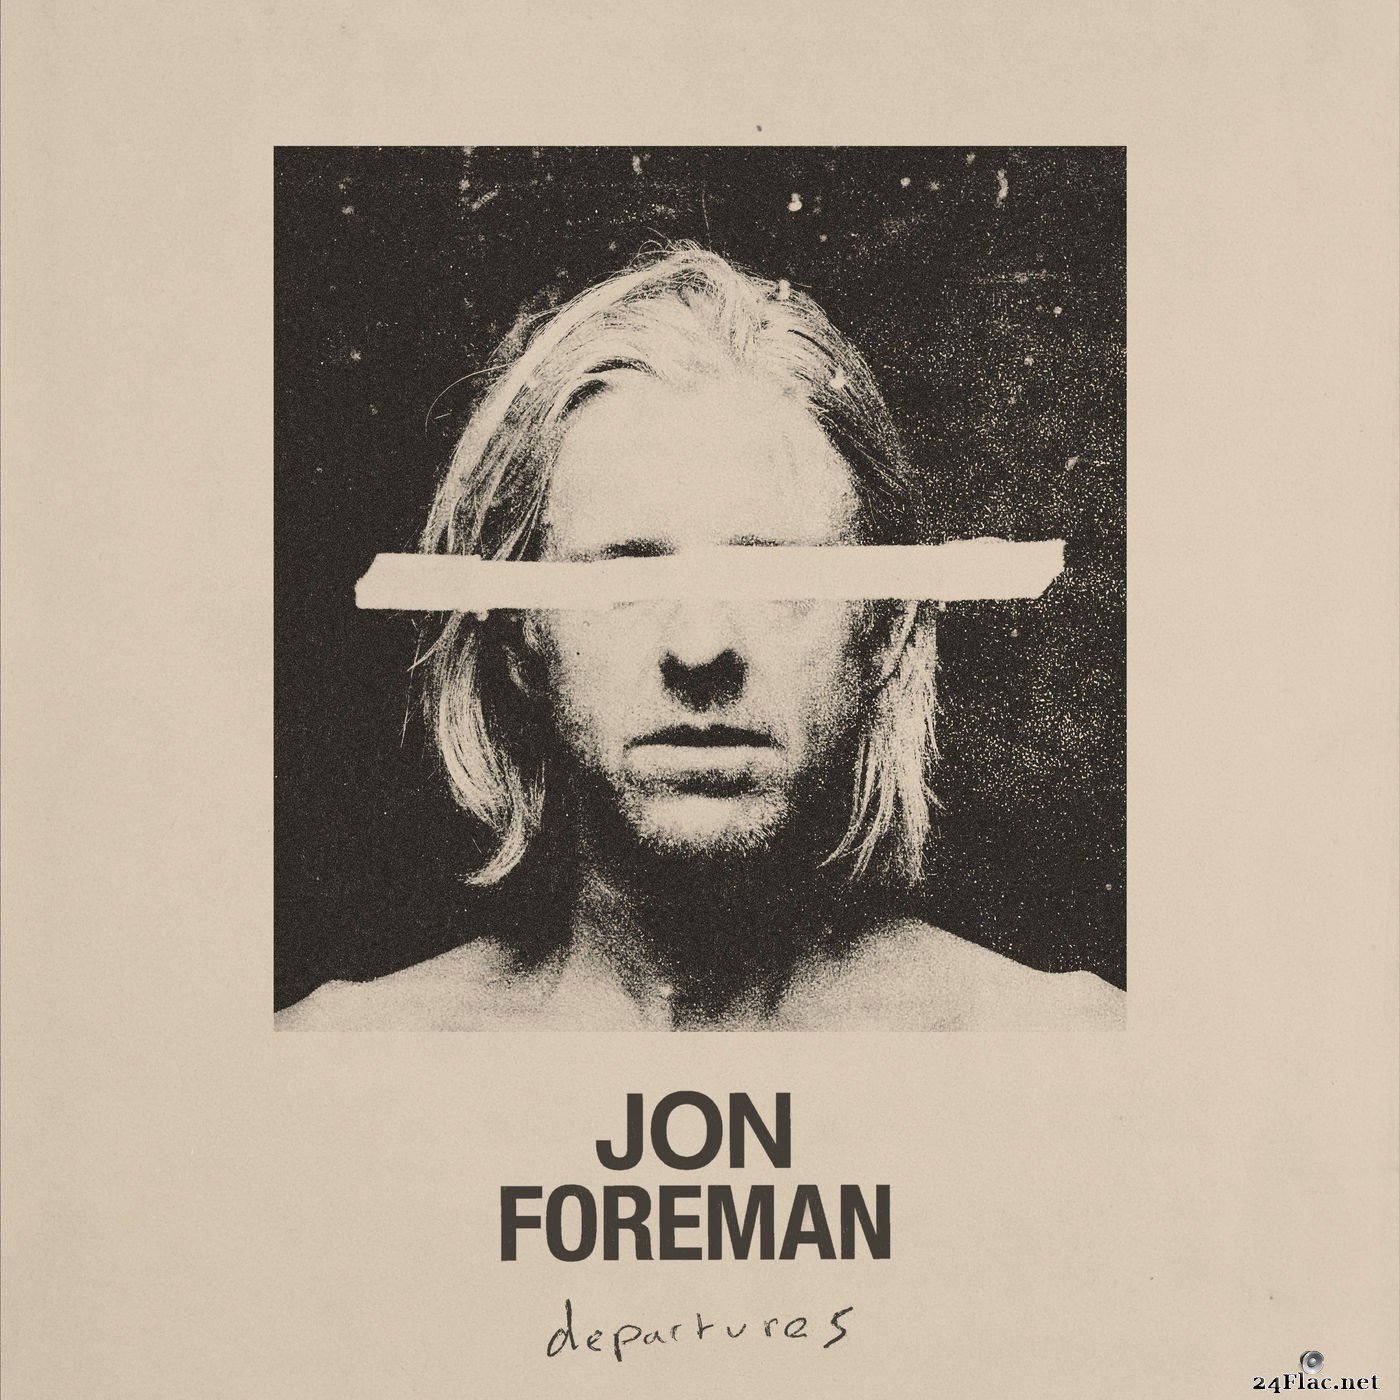 Jon Foreman - Departures (4 tracks) (2021) Hi-Res